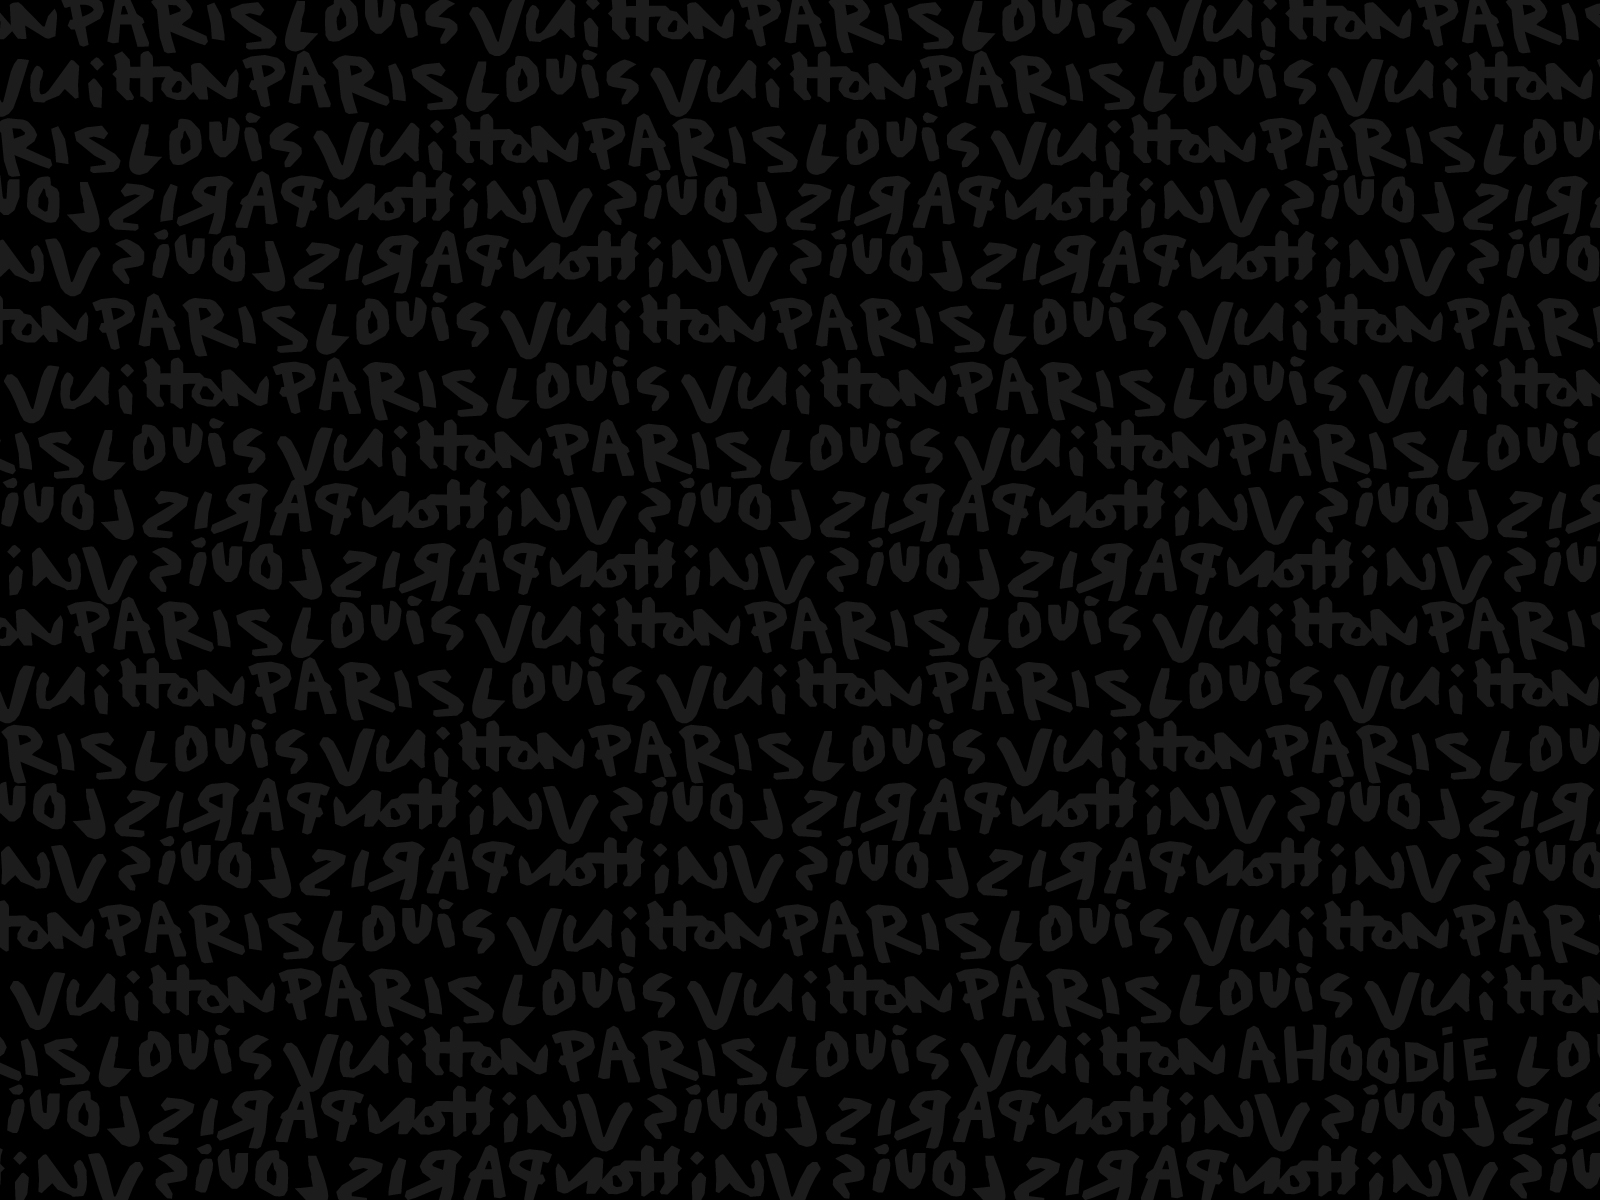 Hãy tải về những mẫu Ahoodie4 Louis Vuitton wallpaper đẹp miễn phí để trang trí cho màn hình điện thoại của bạn. Với các font chữ mang lại cảm giác độc đáo và khác biệt, bộ sưu tập này sẽ khiến bạn hài lòng và hứa hẹn mang đến nhiều giây phút thư giãn cho bạn.